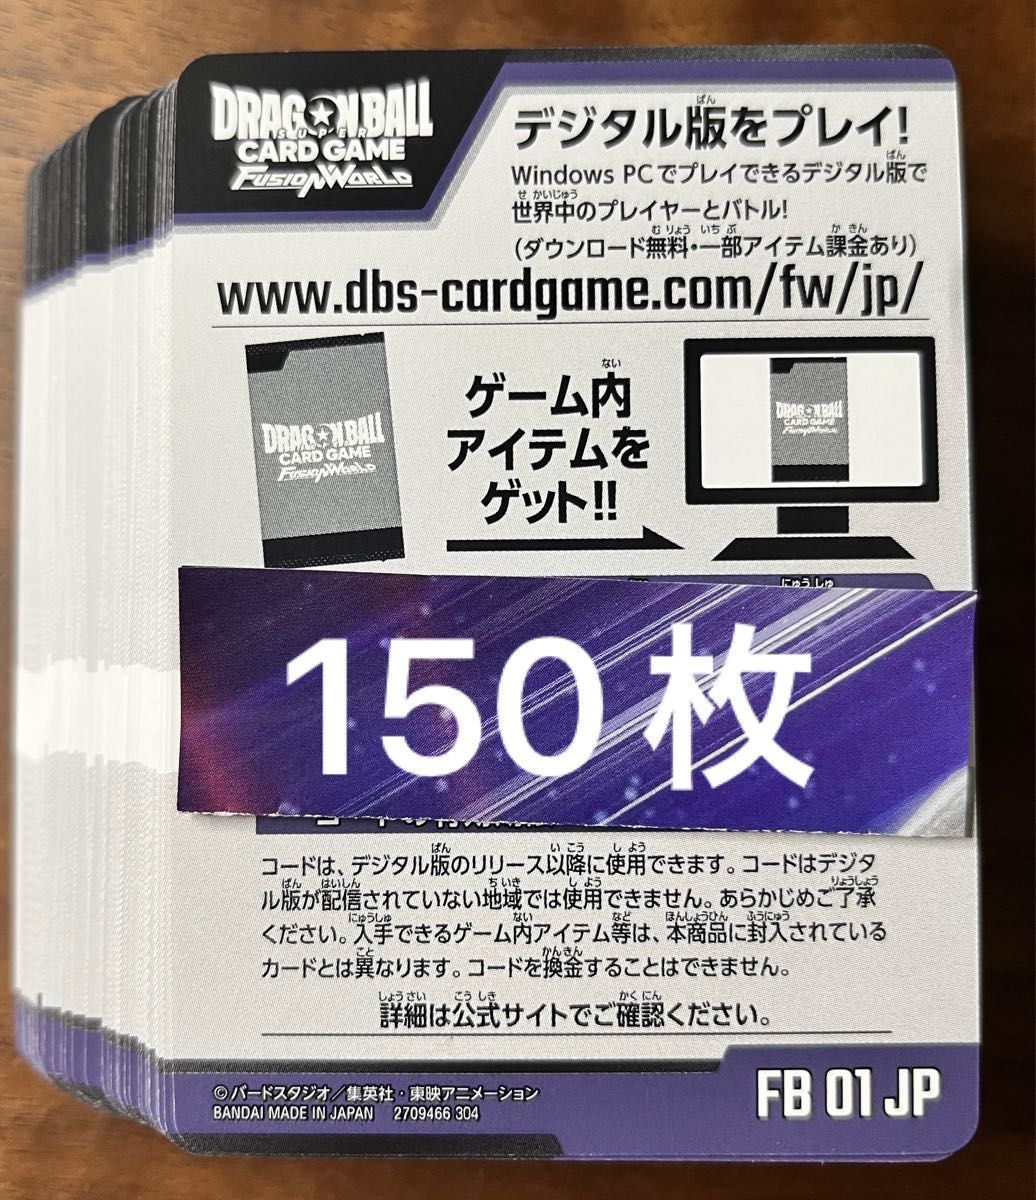 ドラゴンボールスーパーカードゲームフュージョンワールド 覚醒の鼓動 デジタル版シリアルコード150枚